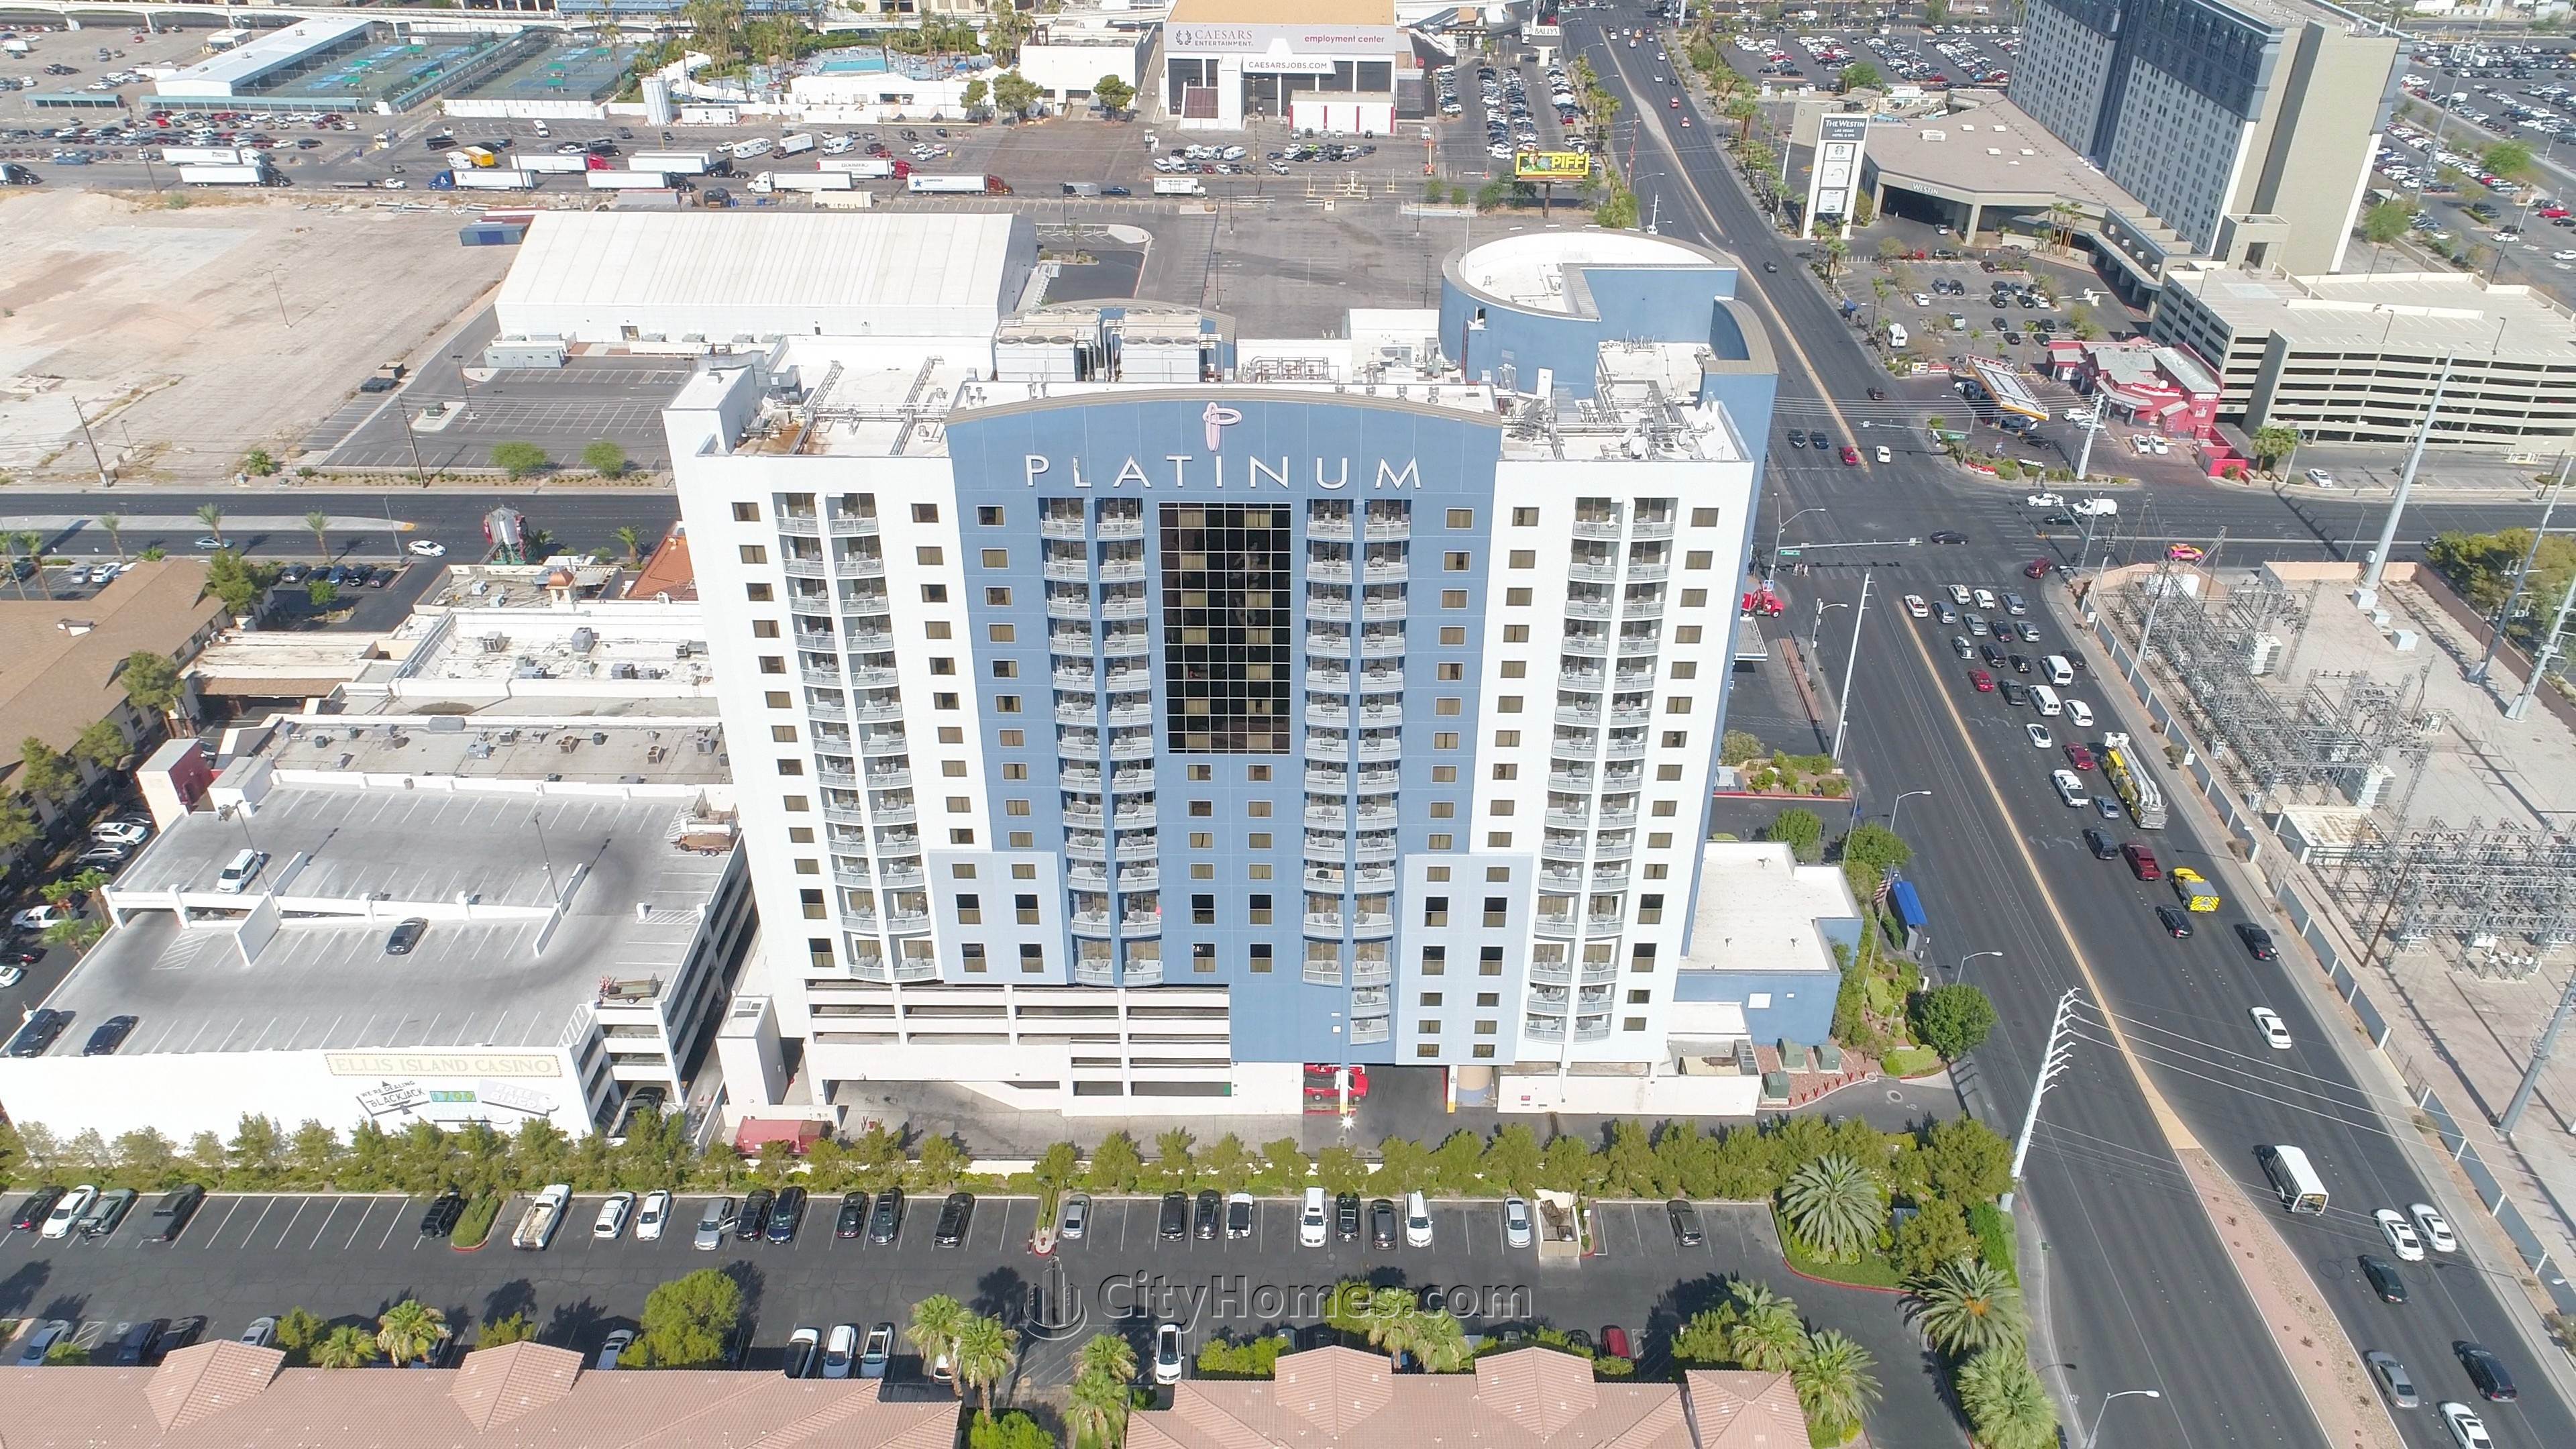 Platinum Resort xây dựng tại 211 E Flamingo Road, Paradise, Las Vegas, NV 89169